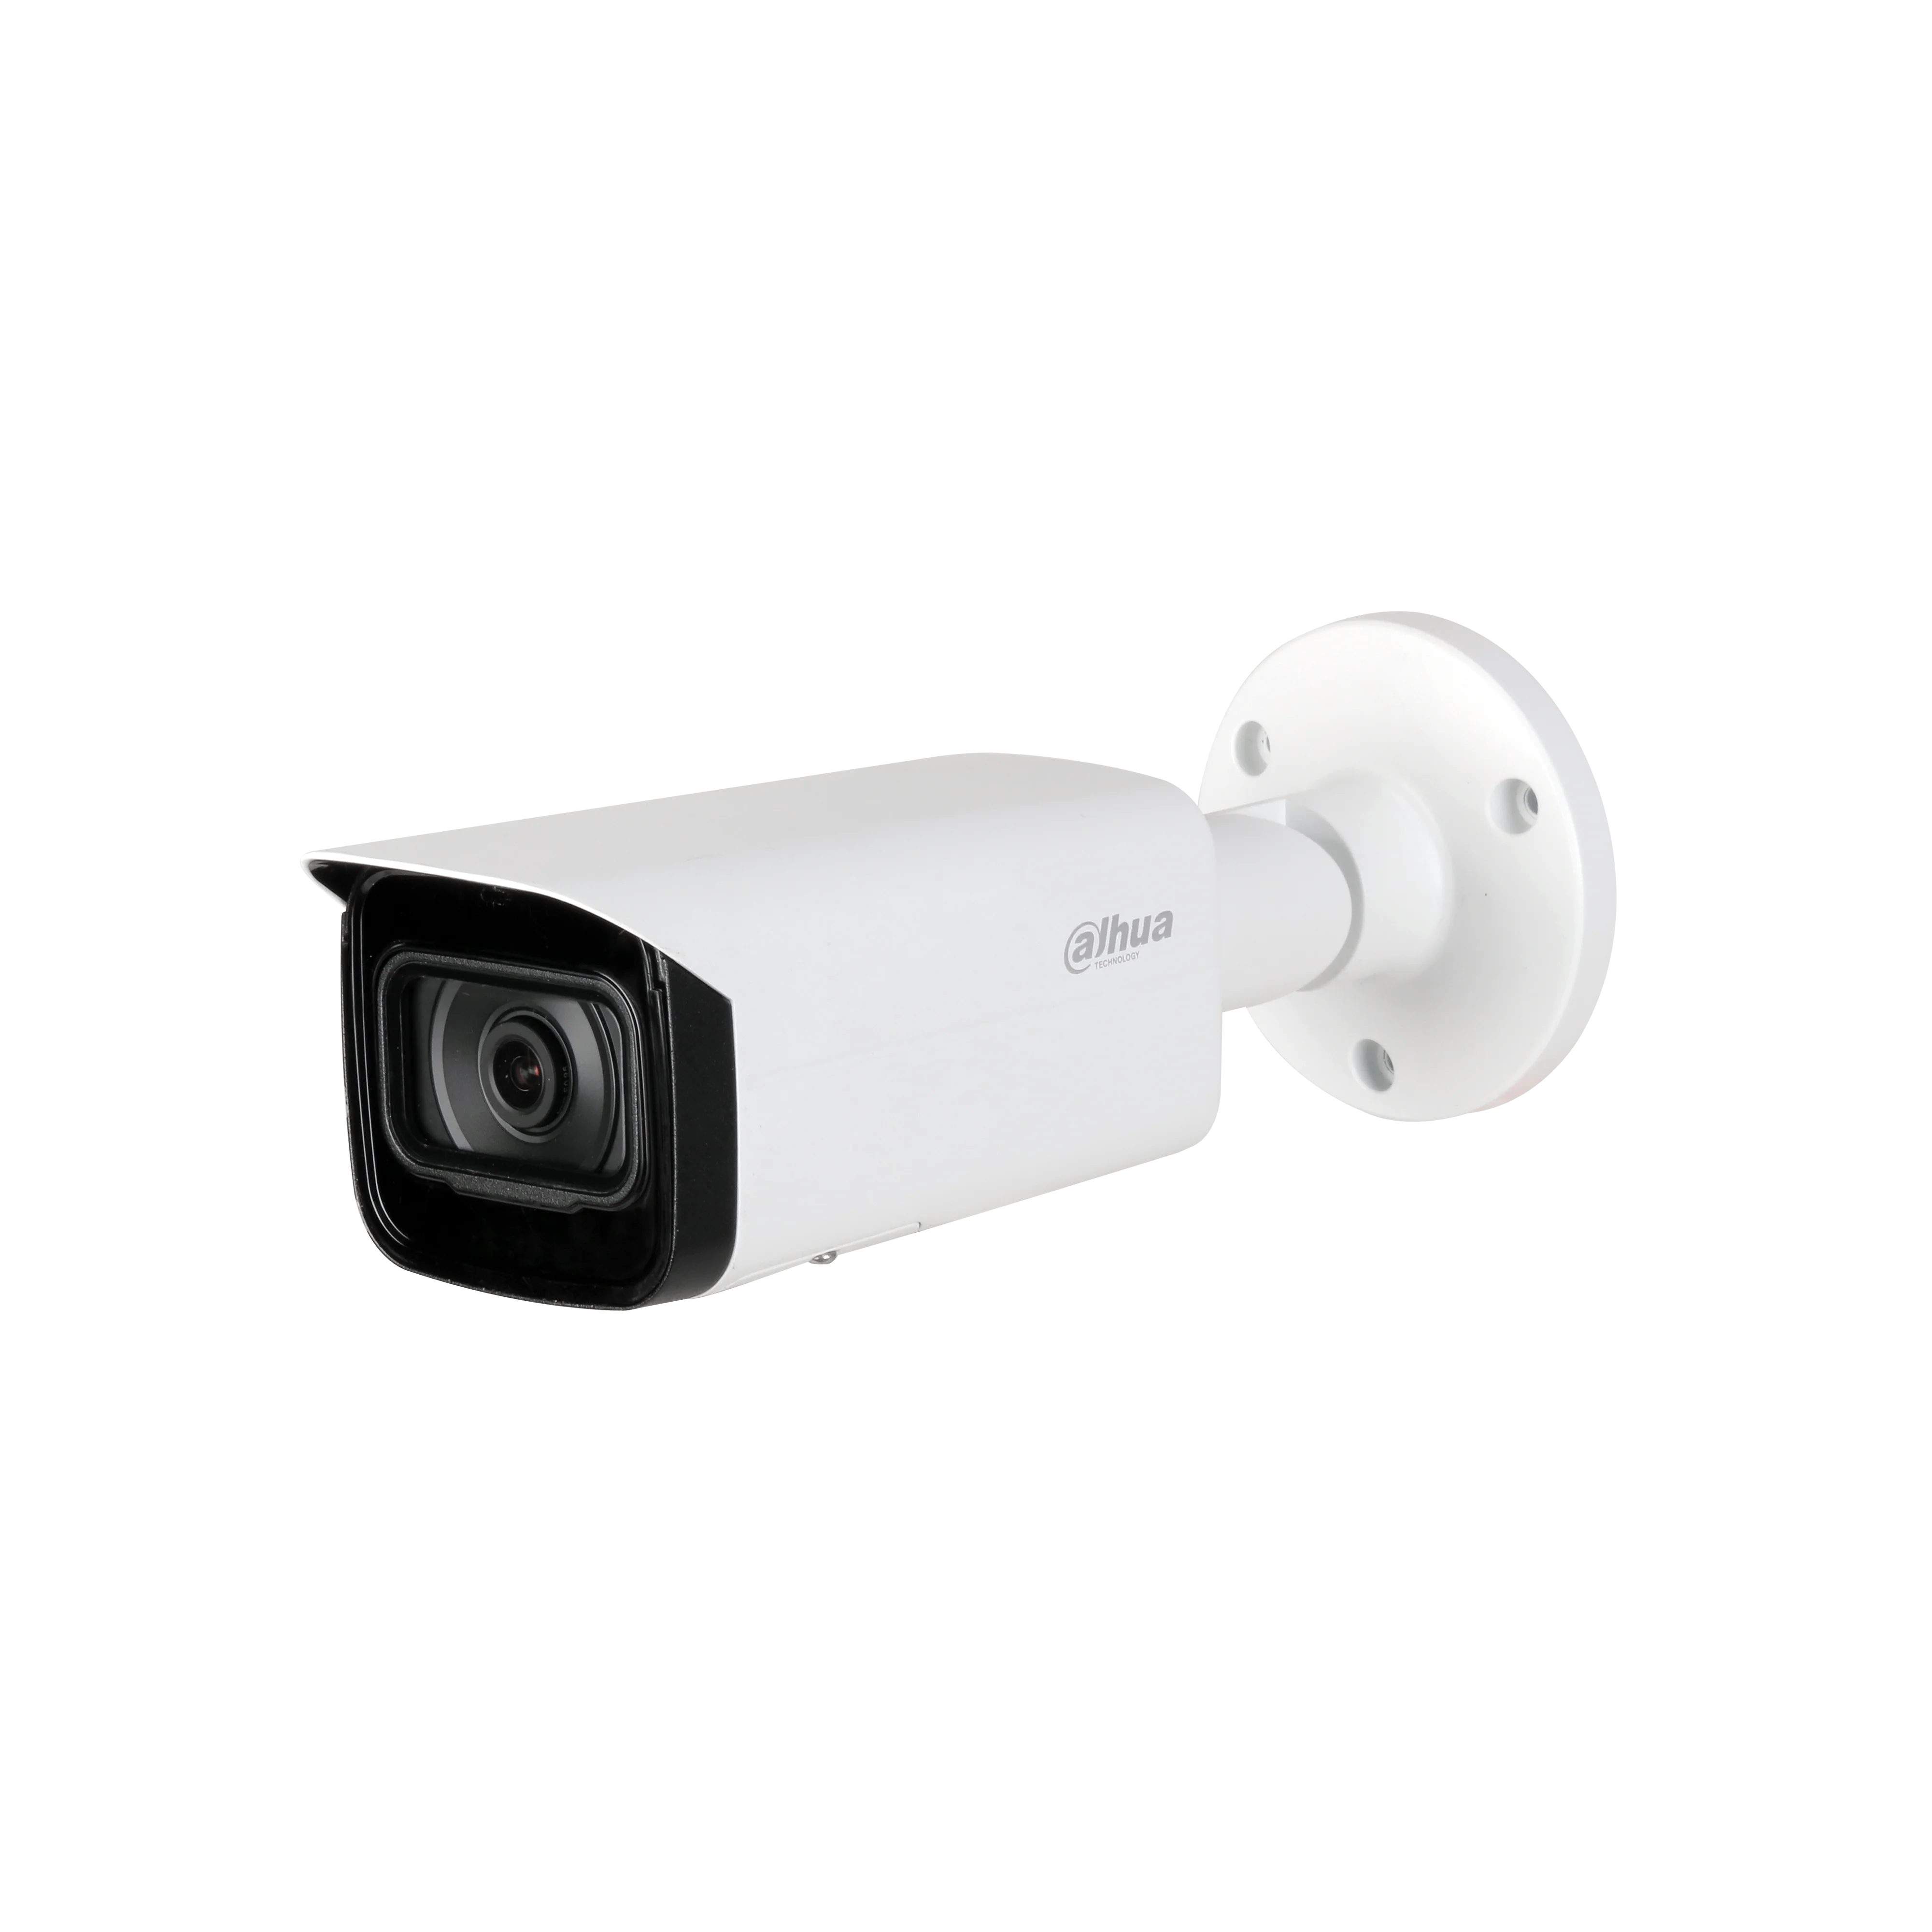 Dahua 4MP AI IR EPOE Kulka vaizdo Kamera IPC-HFW5442T-ASE Led Ilgis Saugumo VAIZDO Kamera, namų apsaugos vaizdo stebėjimo